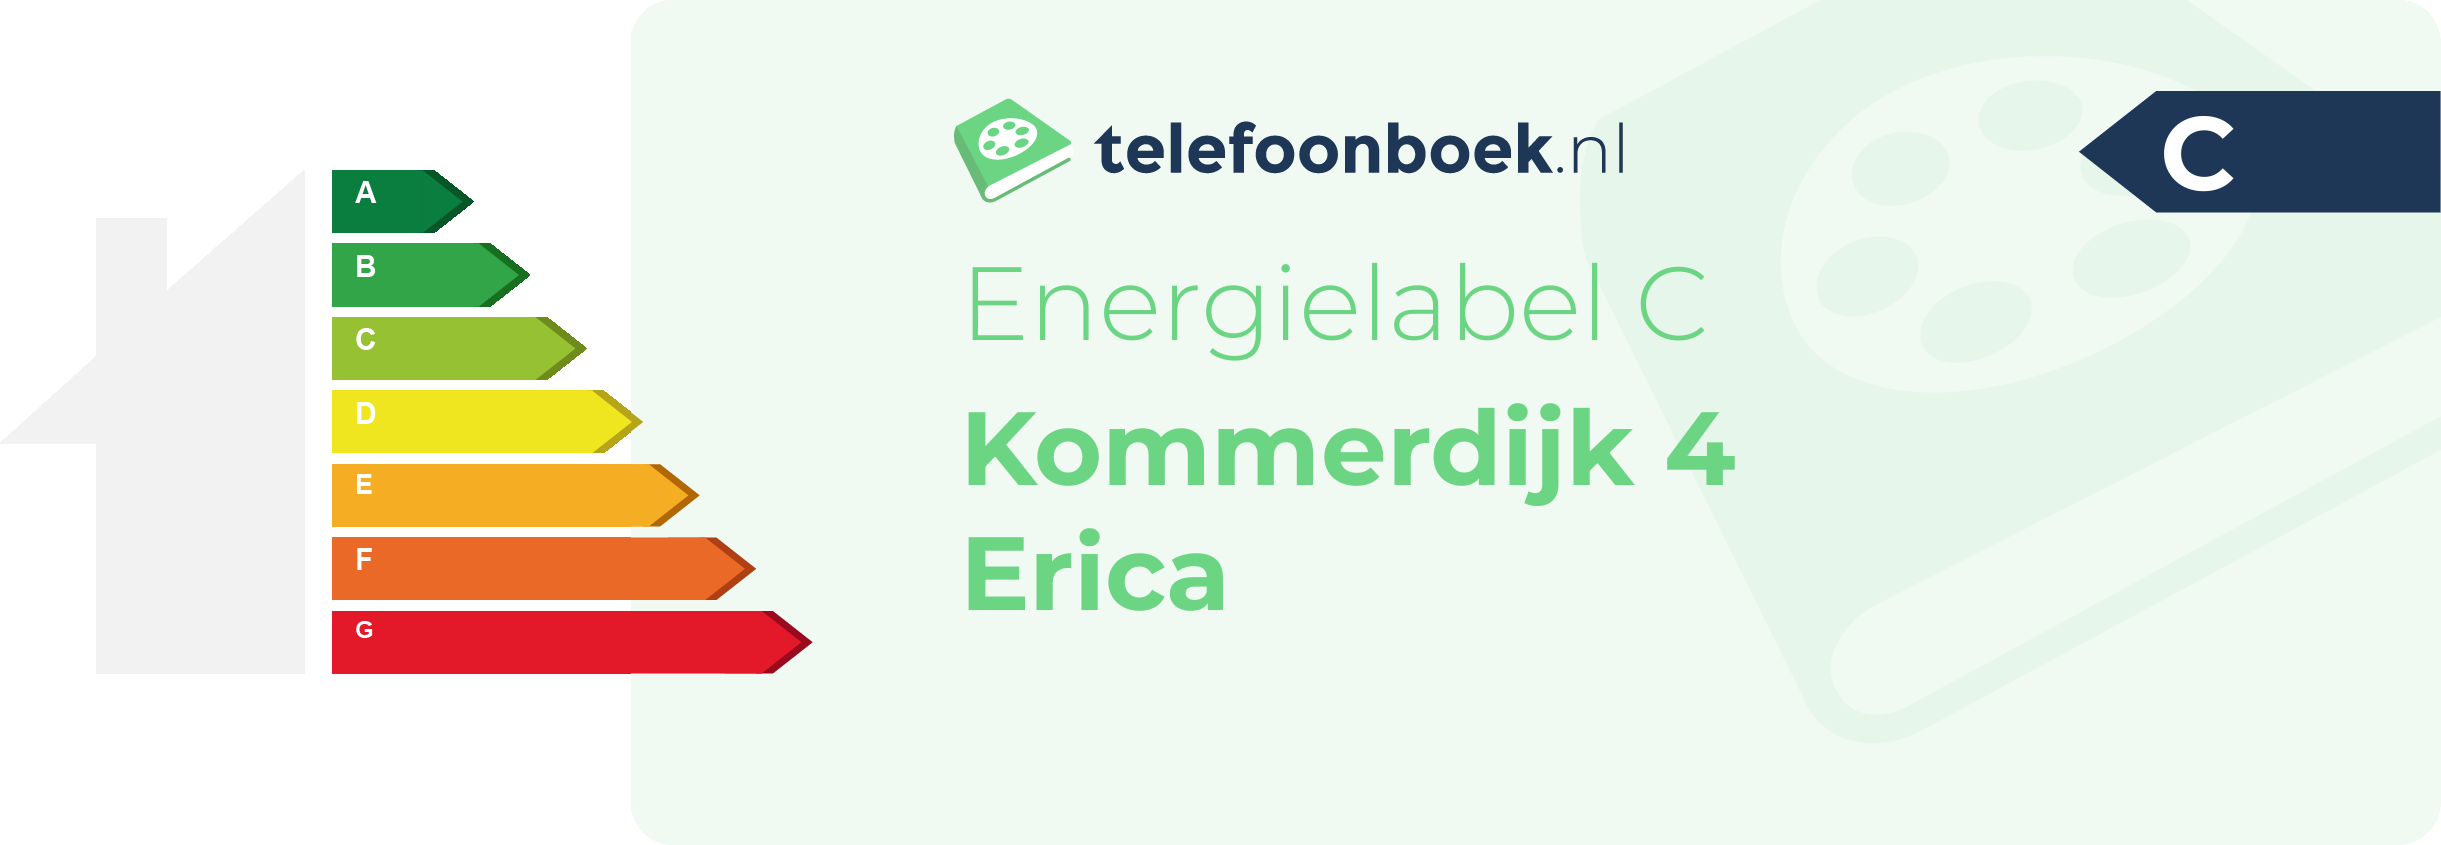 Energielabel Kommerdijk 4 Erica